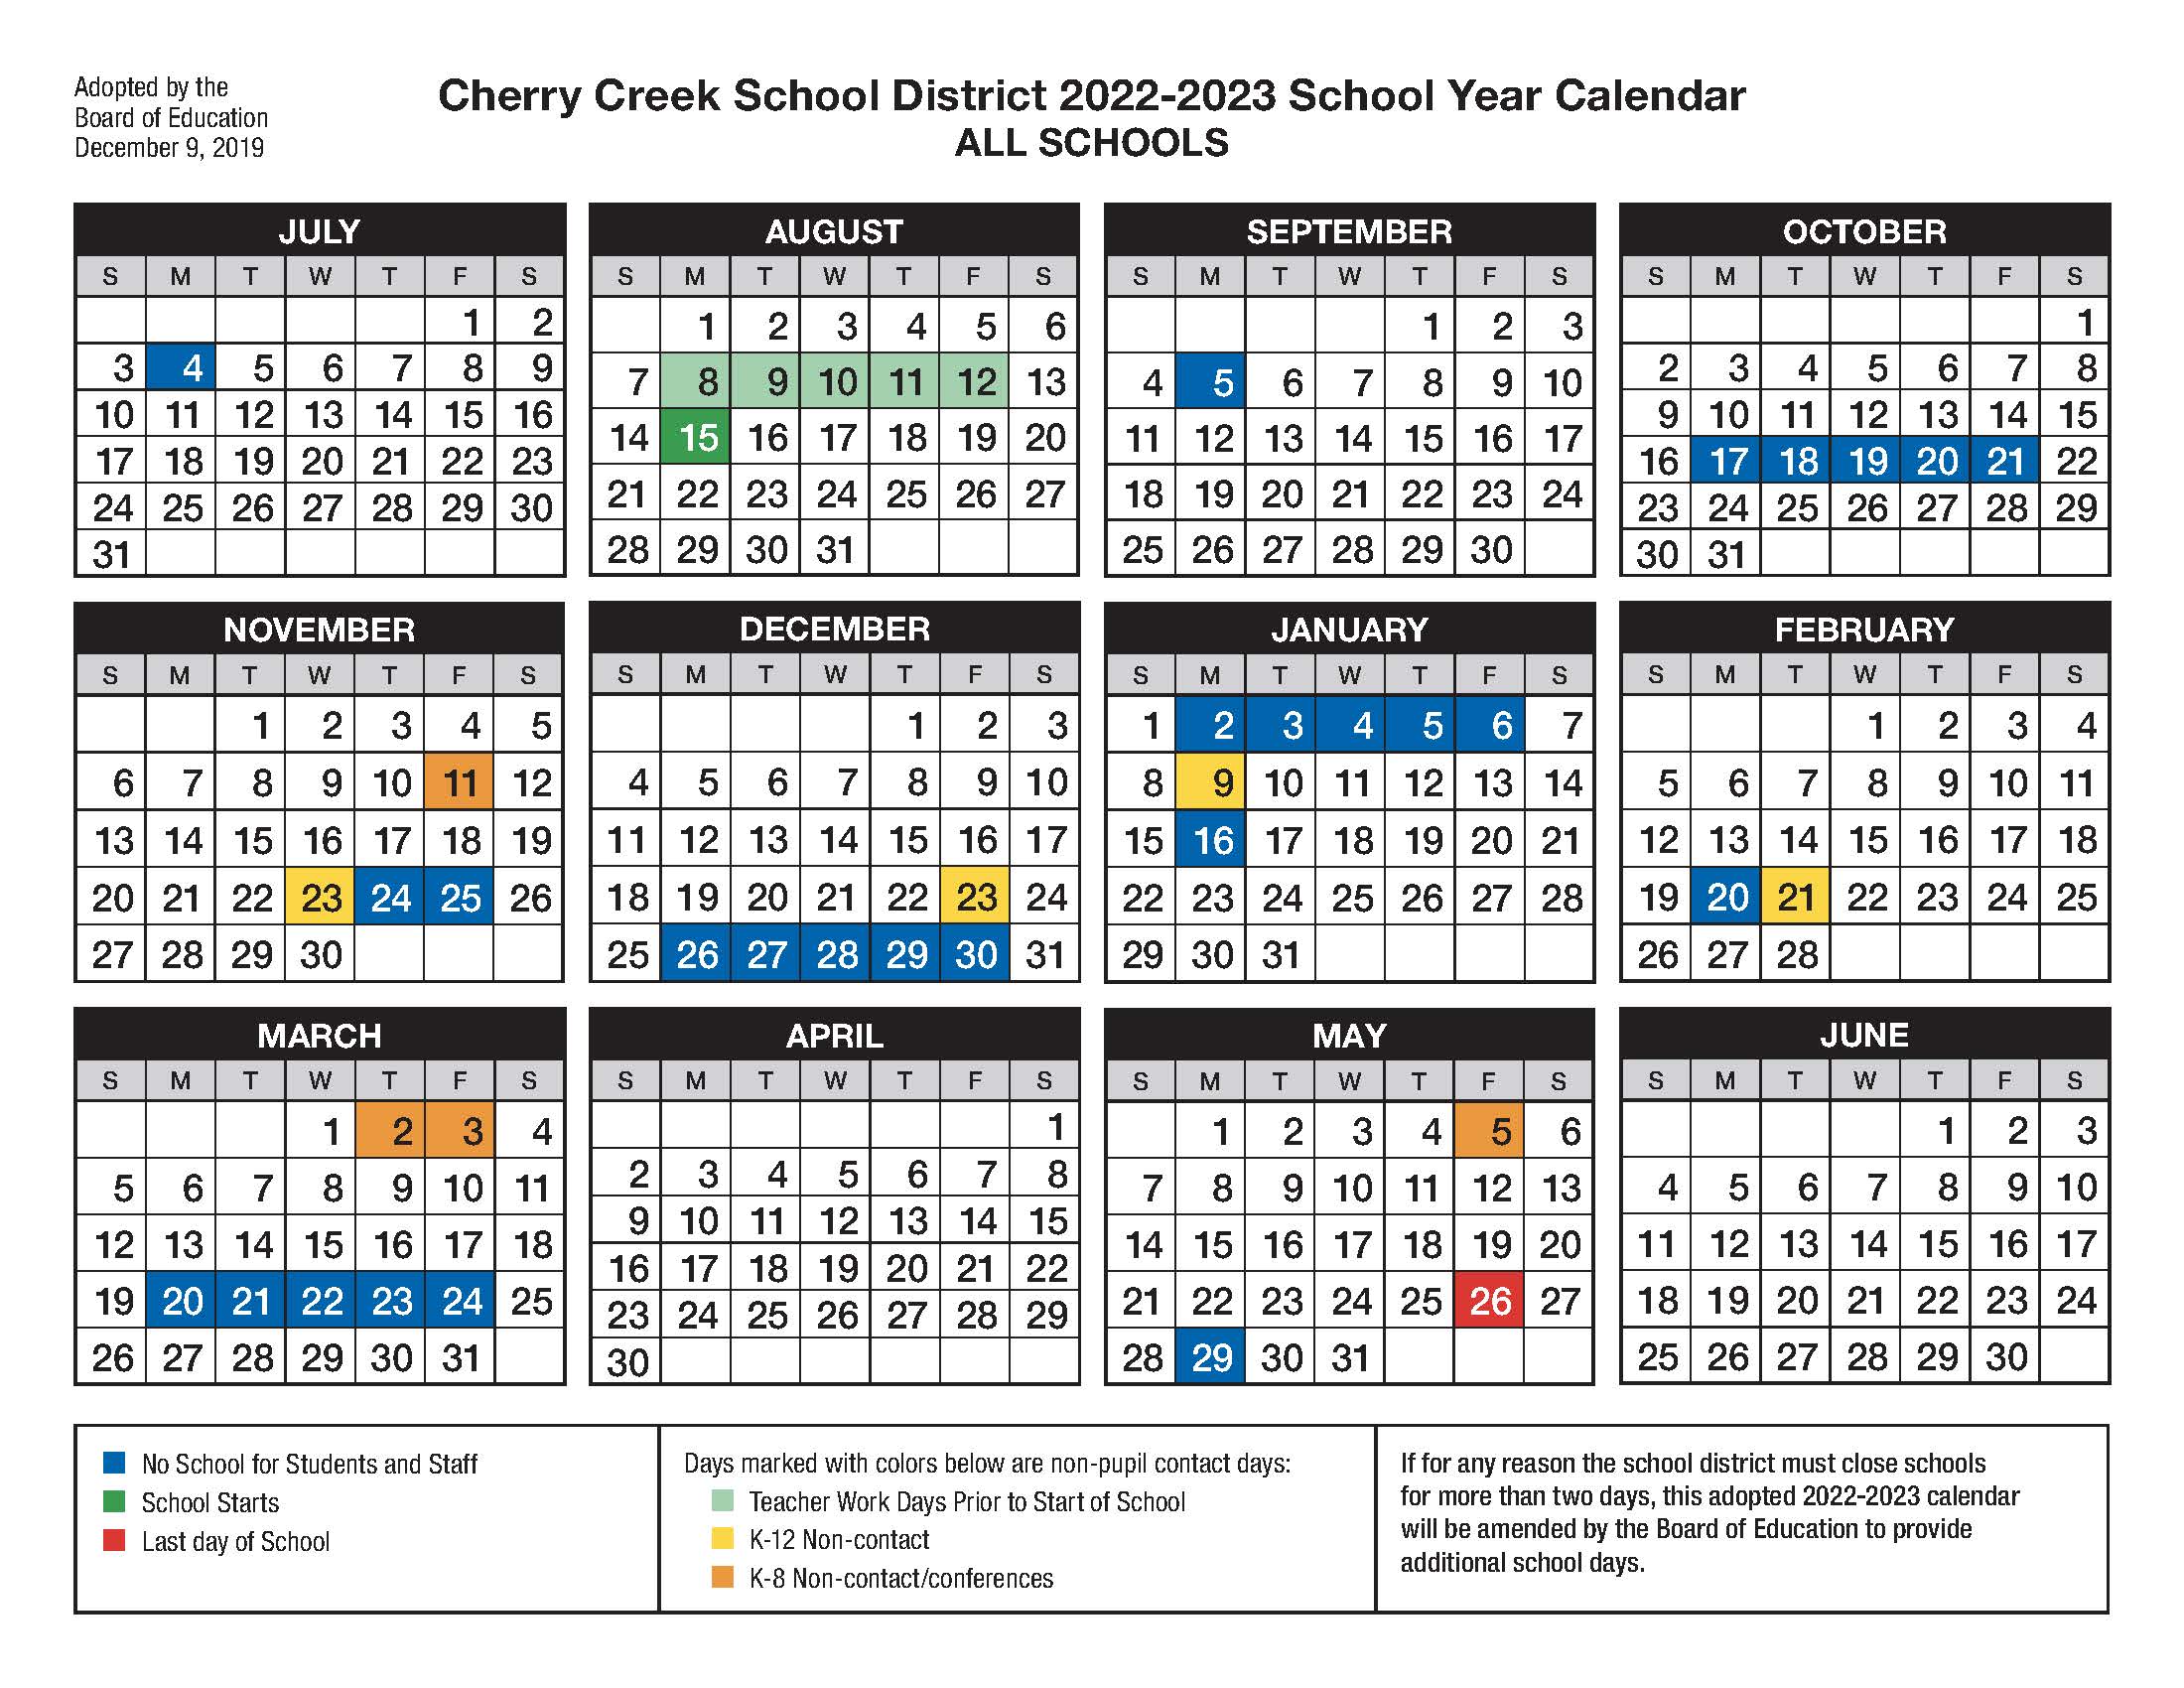 CCSD School Calendar